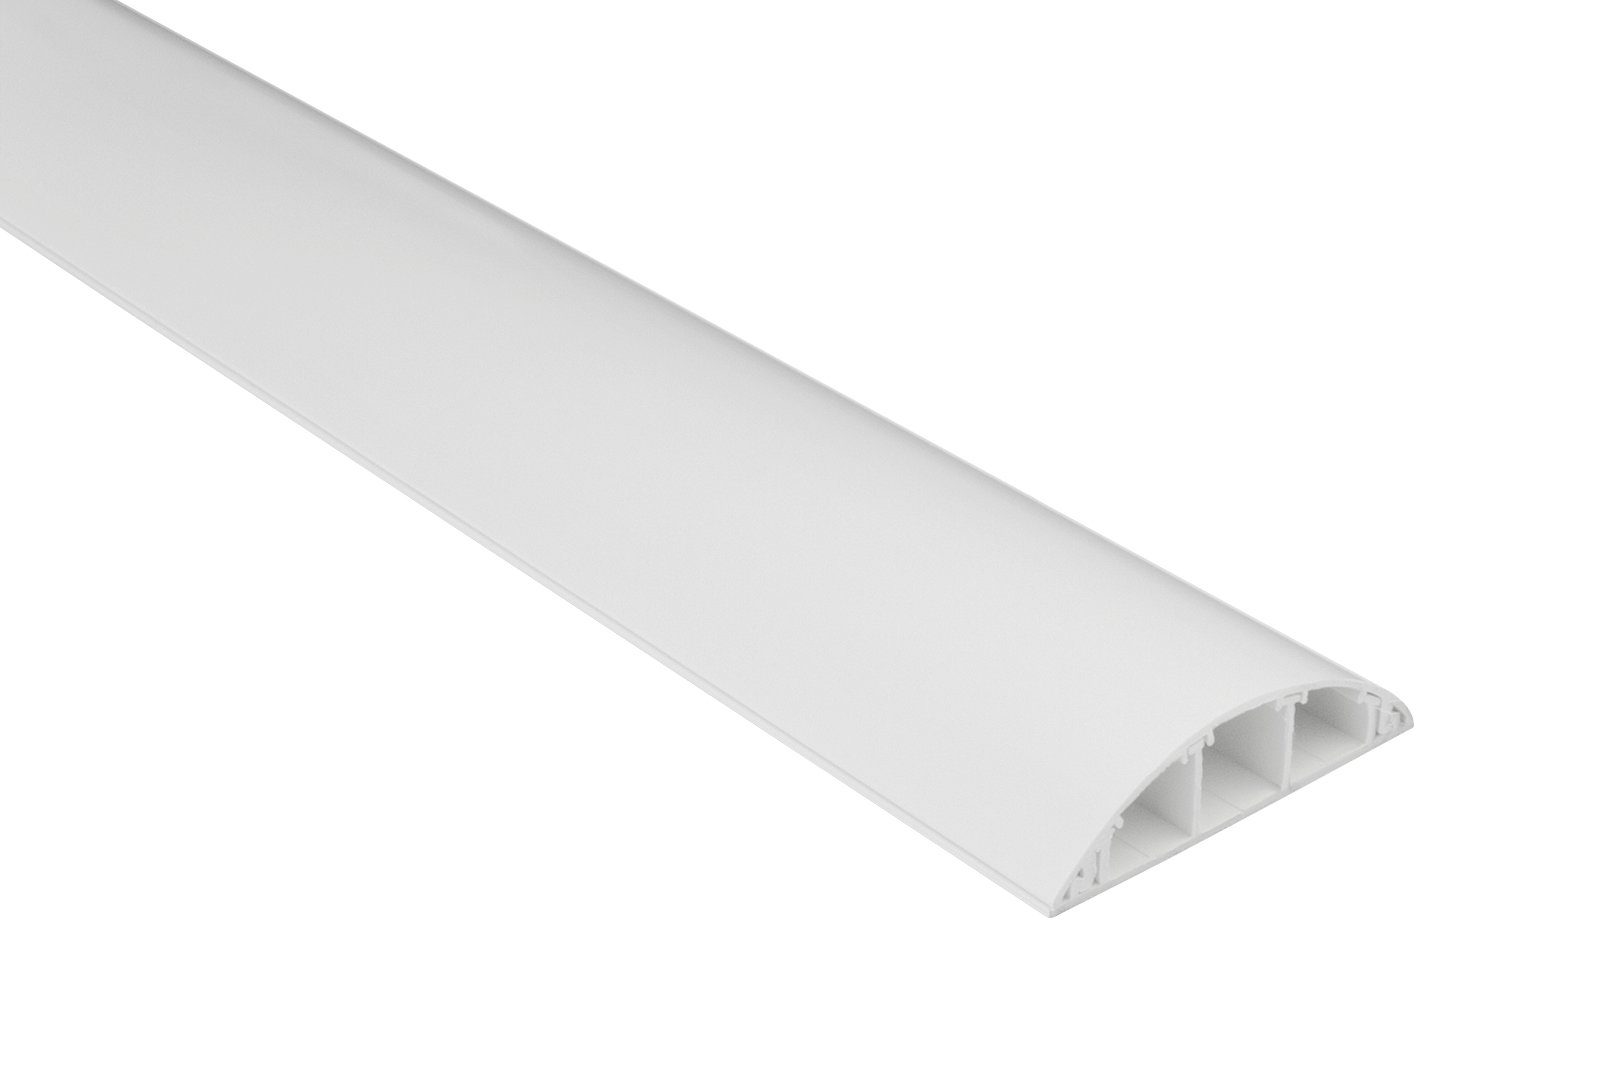 Hexim Kabelkanal (68x18mm halbrunde PVC Kunststoff Kabelabdeckung für TV, Wand & Boden (8 Meter weiß) Kabelverkleidung Kabel Kanäle rund Fußboden)